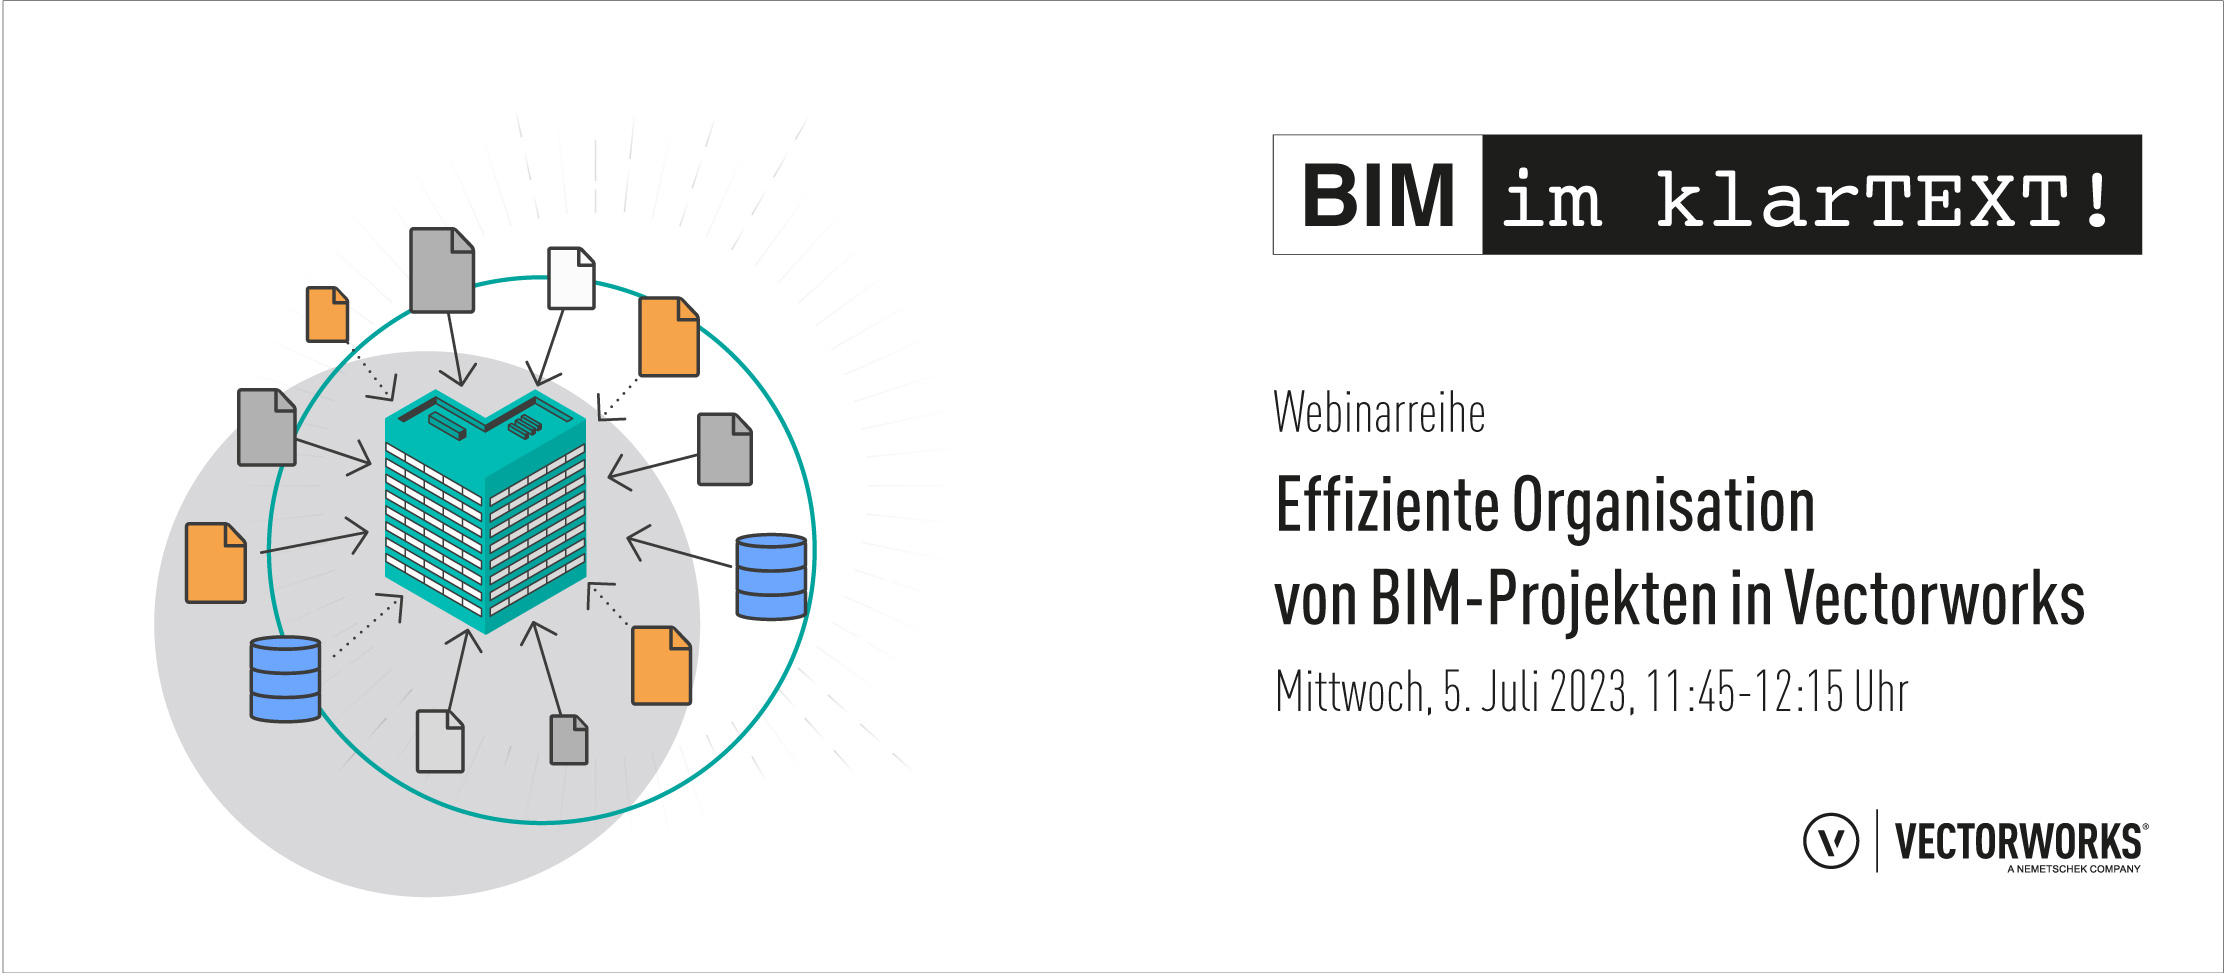 Effiziente Organisation von BIM-Projekten in Vectorworks